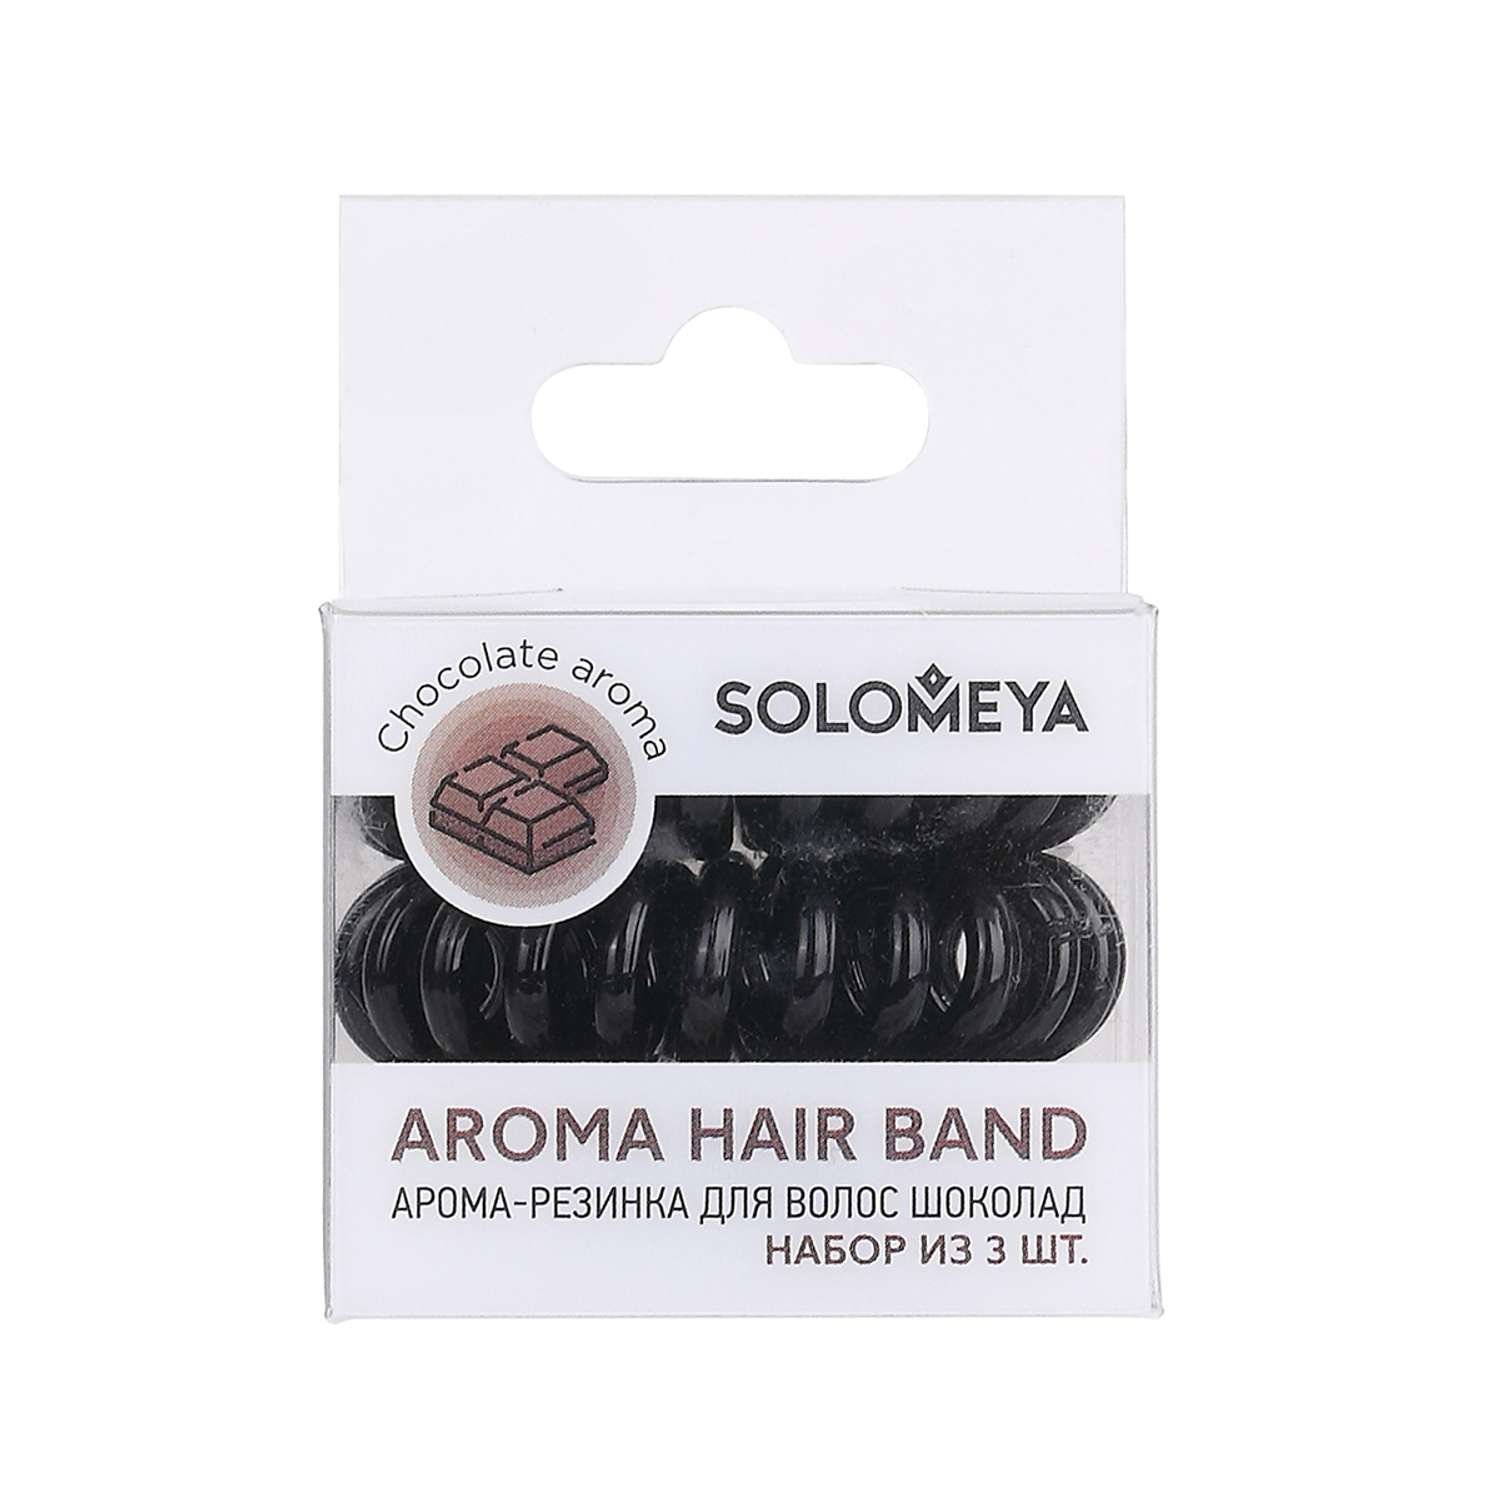 Арома-резинка для волос SOLOMEYA Шоколад набор из 3 шт - фото 1